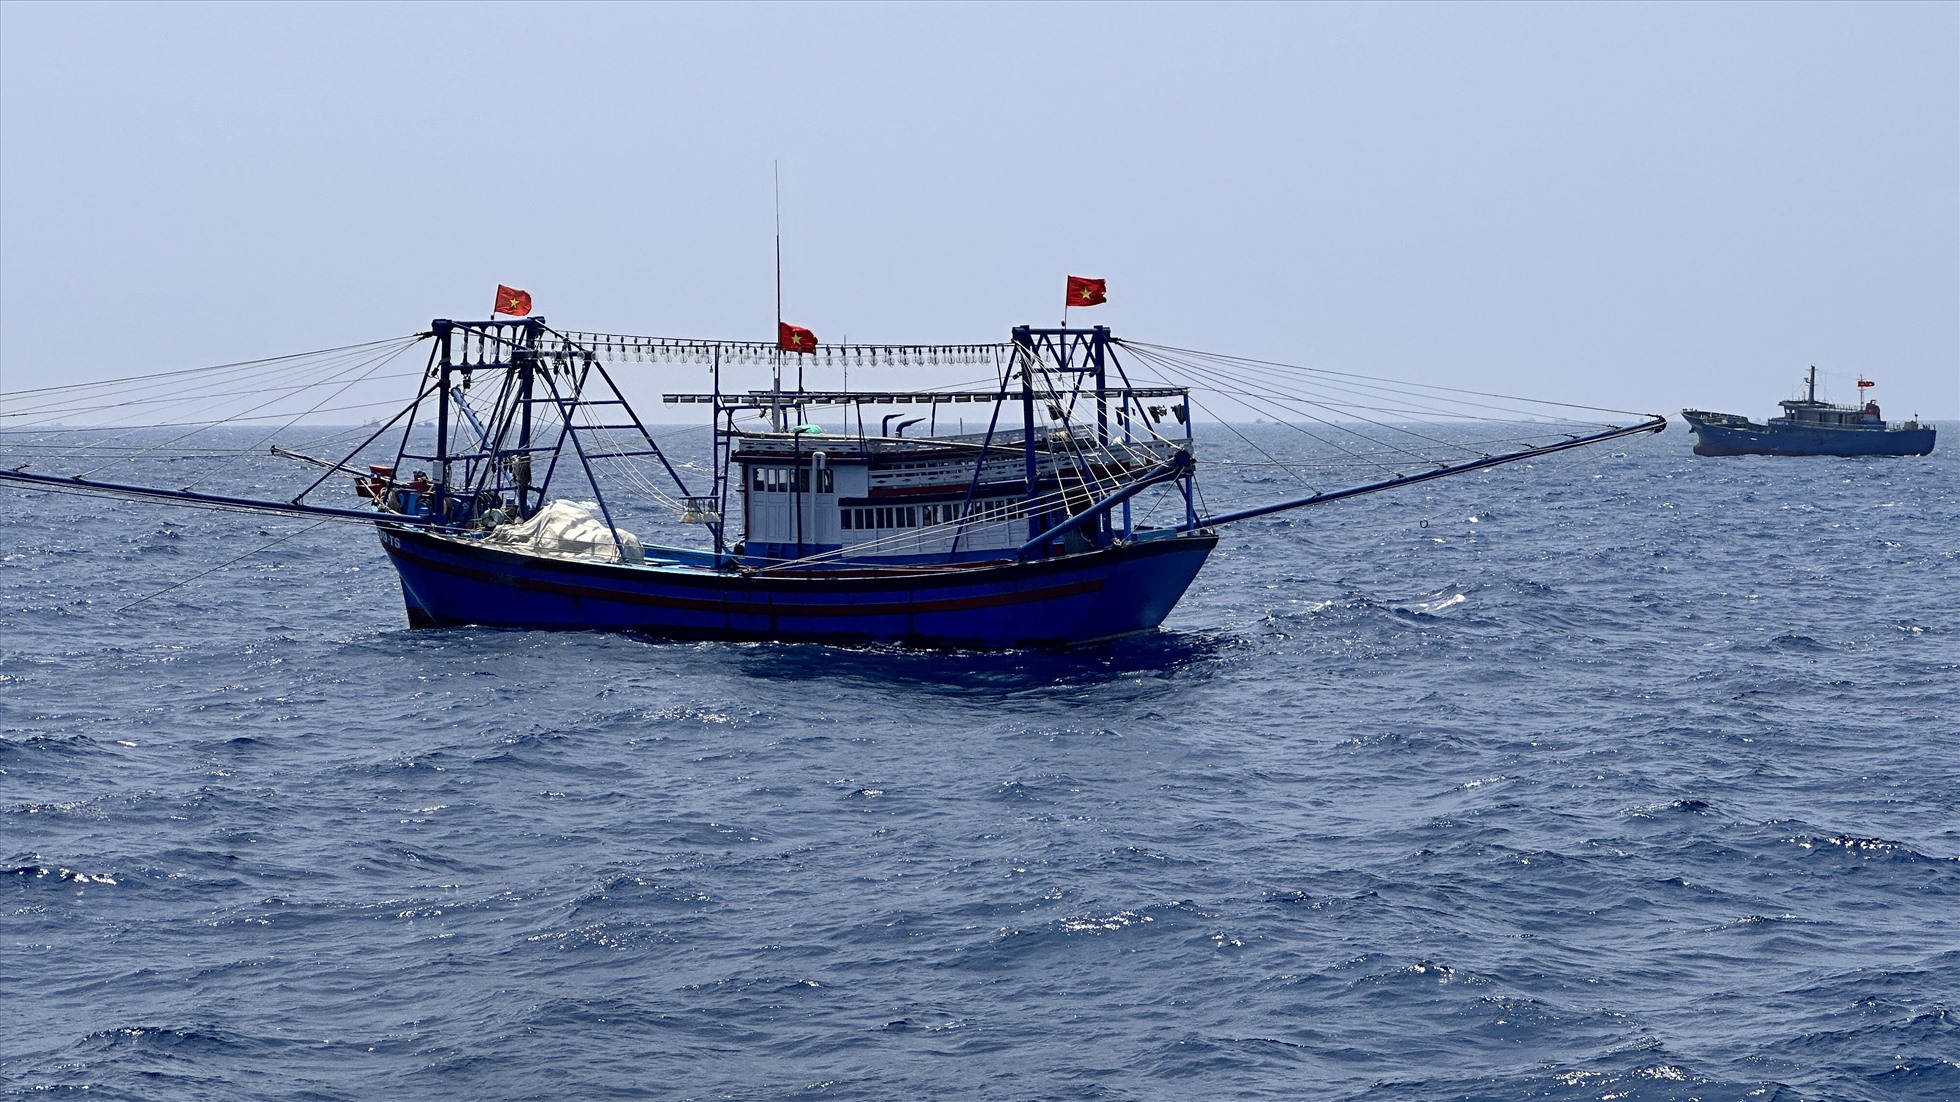 Tàu cá của ngư dân Phú Quý hoạt động ngoài khơi và mong muốn thêm nhiều chính sách hỗ trợ ngư dân vươn khơi. Ảnh: Duy Tuấn